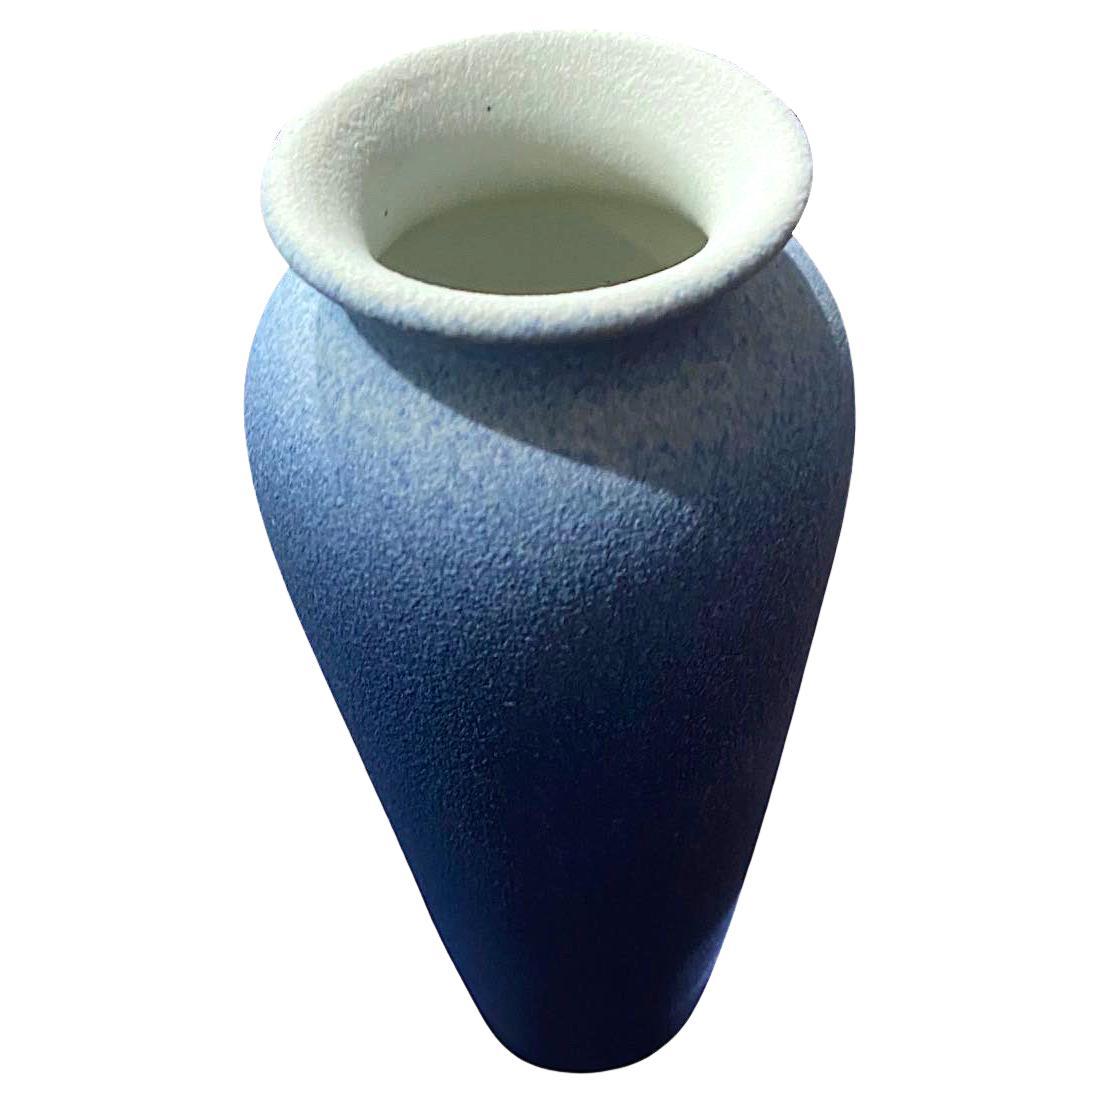 Vase contemporain chinois à glaçage bleu ombre.
Haut de forme arrondie avec une large ouverture du bec.
Fait partie d'une grande collection.